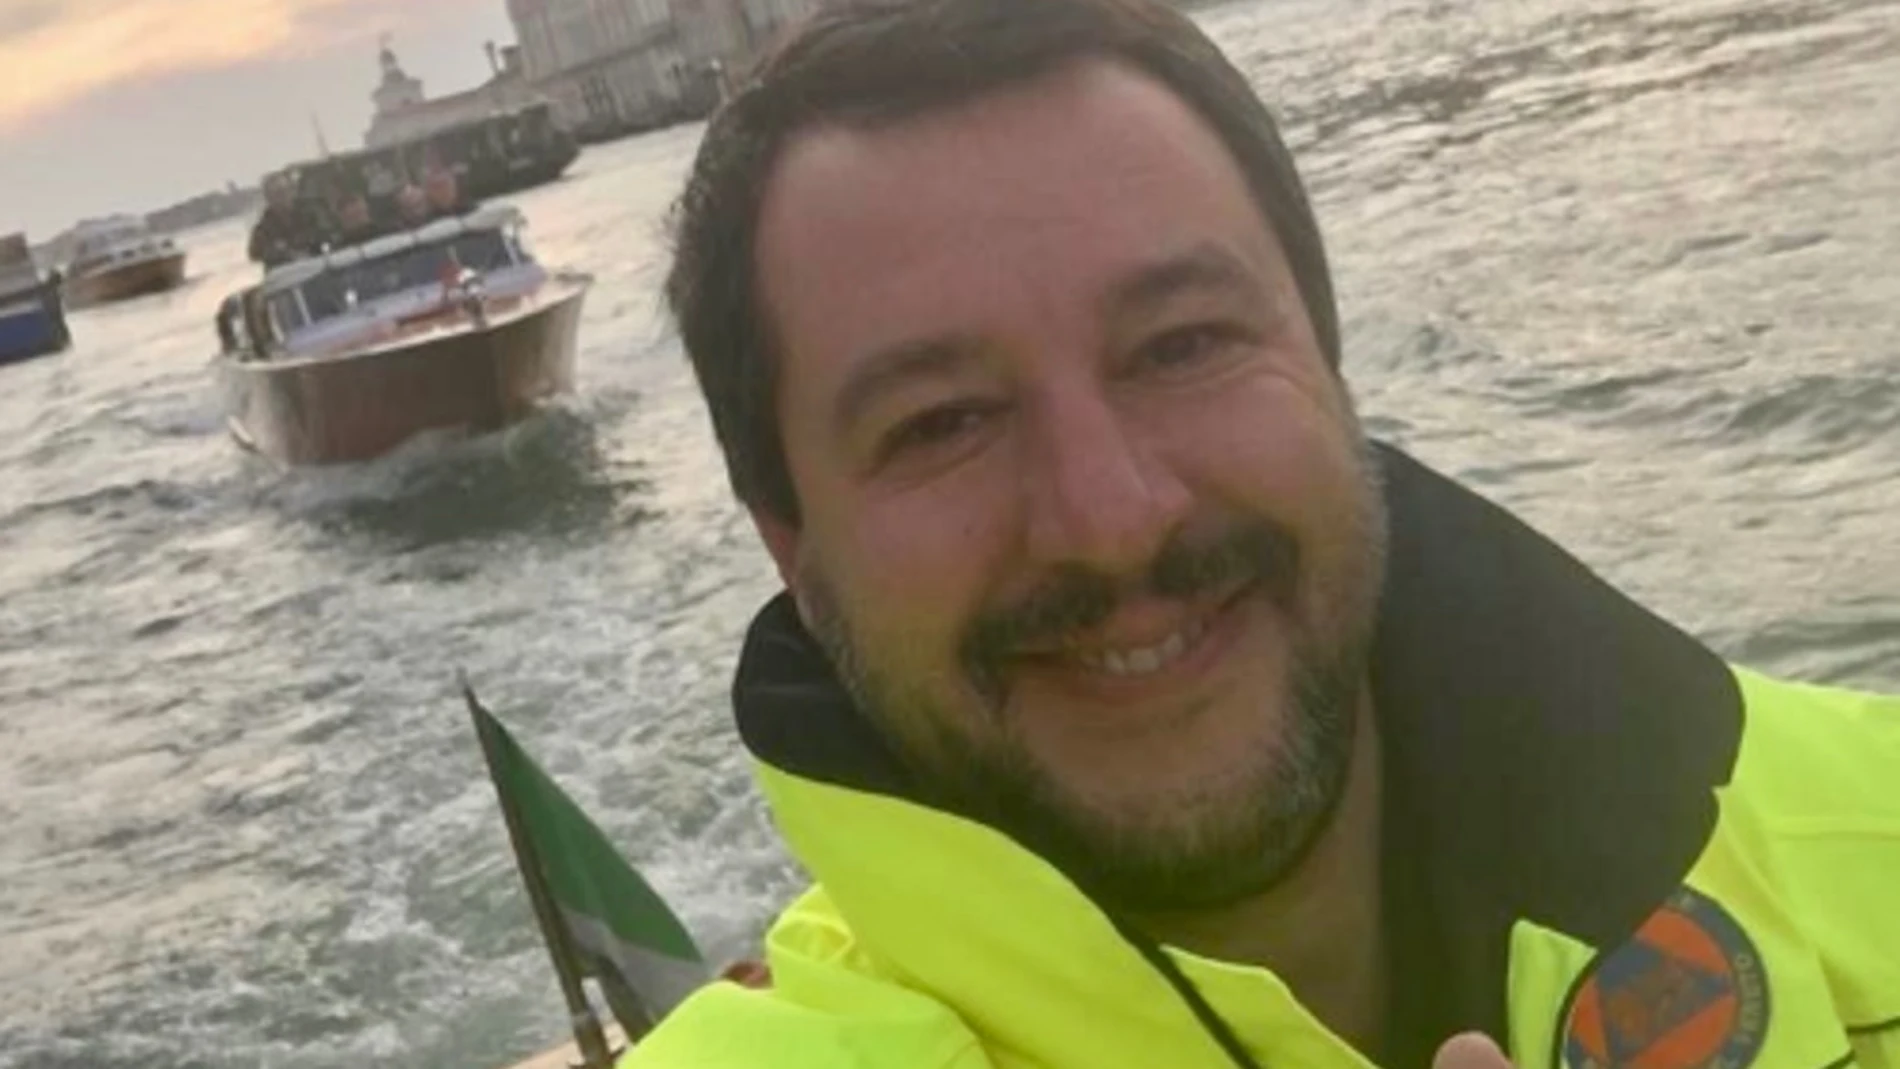 Imagen publicada por Salvini en su cuenta de Twitter